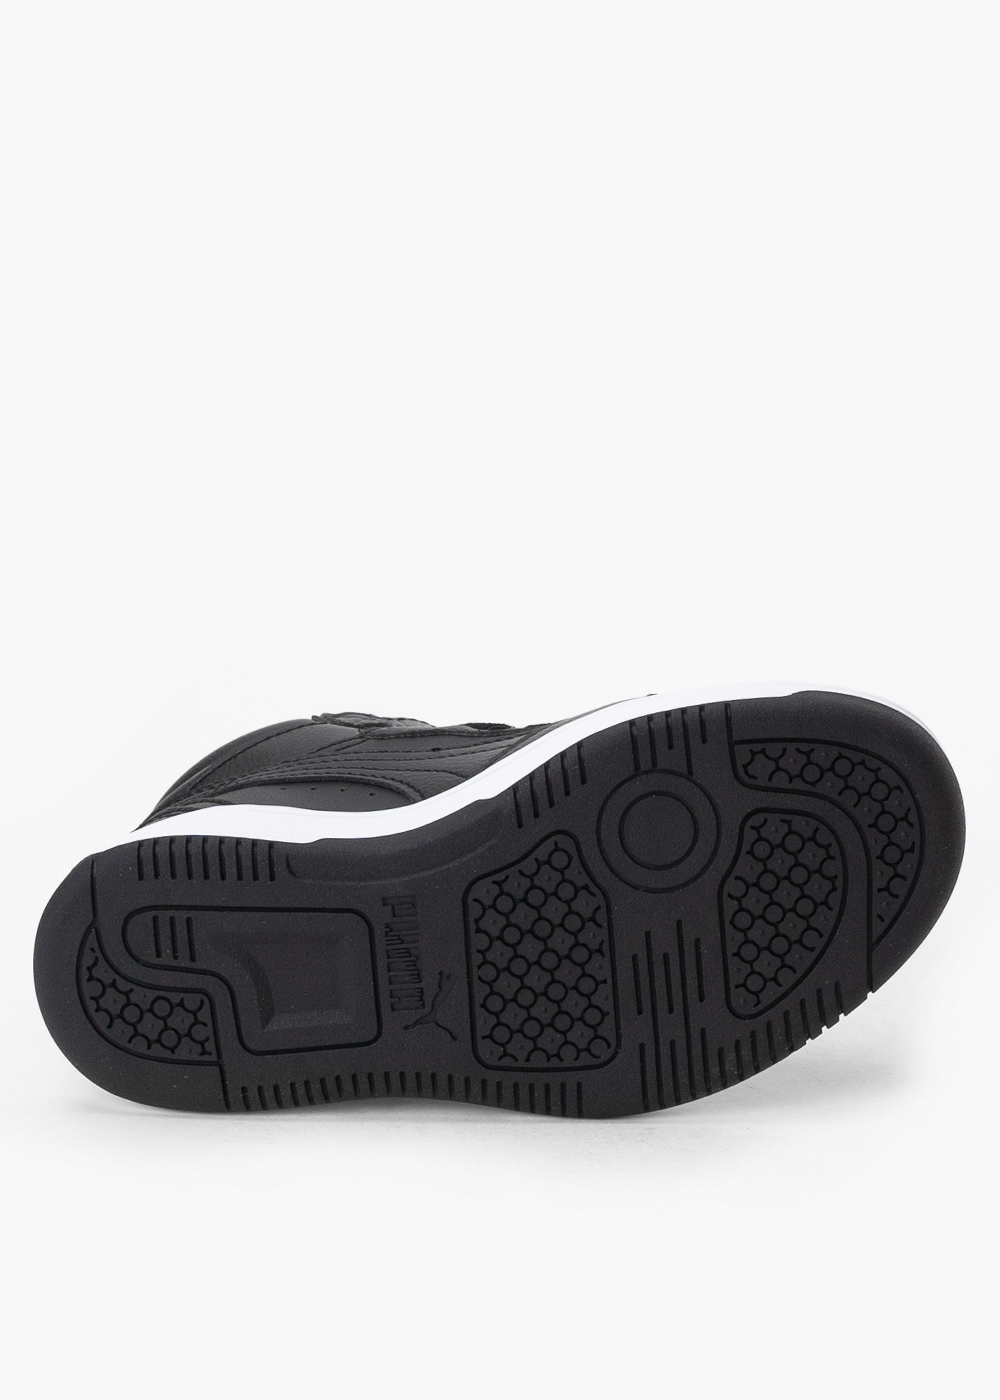 PUMA REBOUND V6 MID WTR AC+ PS 42,99 € - Sneaker Peeker - Los Mejores  Descuentos! Calzado, ropa y accesorios | Street, Trekking, Sport, Lifestyle